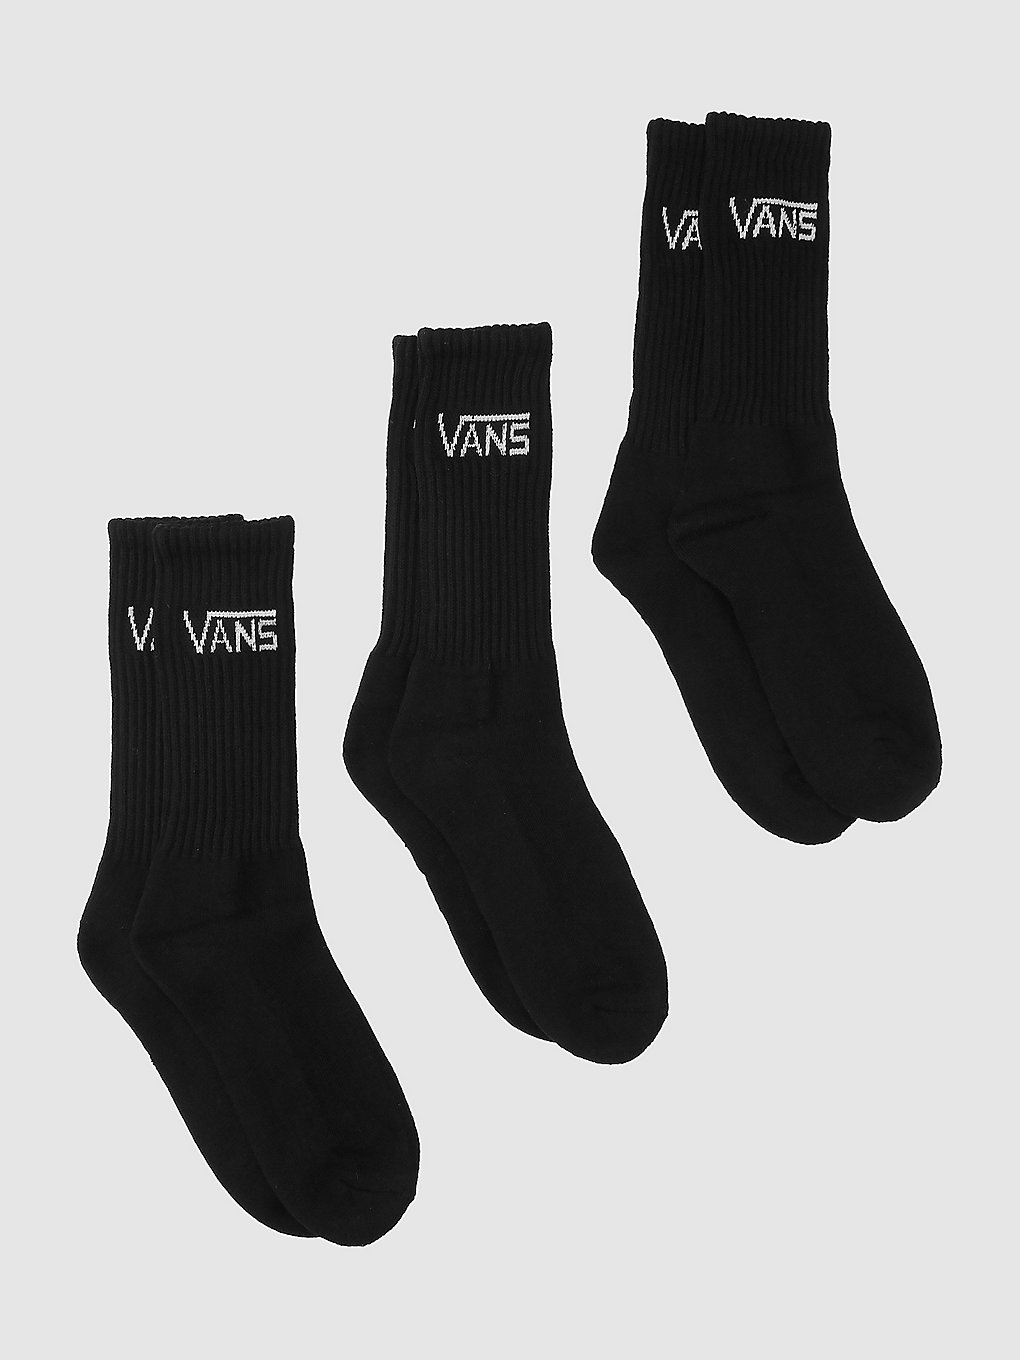 Vans Classic Crew (6.5-9) Socken black kaufen